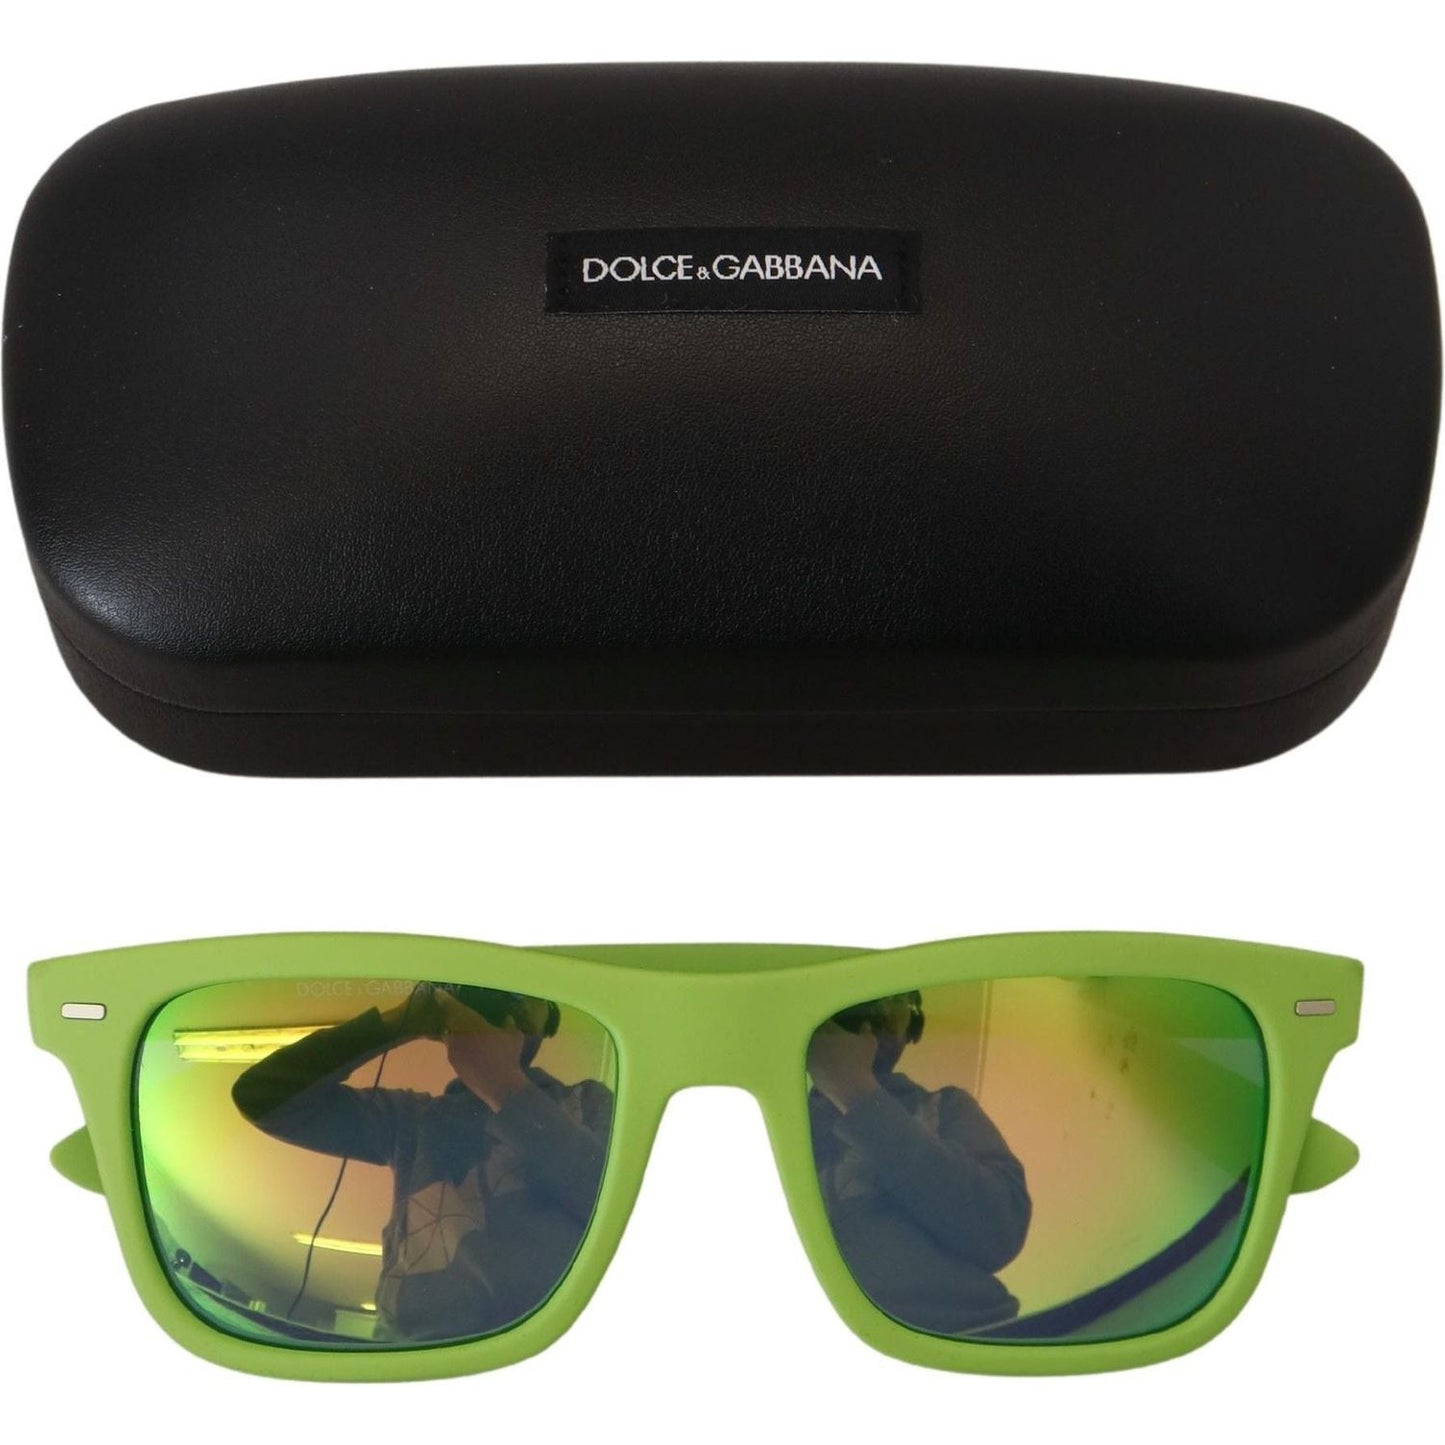 Dolce & Gabbana Acid Green Chic Full Rim Sunglasses green-rubber-full-rim-frame-shades-dg6095-acid-sunglasses IMG_4211-76dae3c6-b3f.jpg